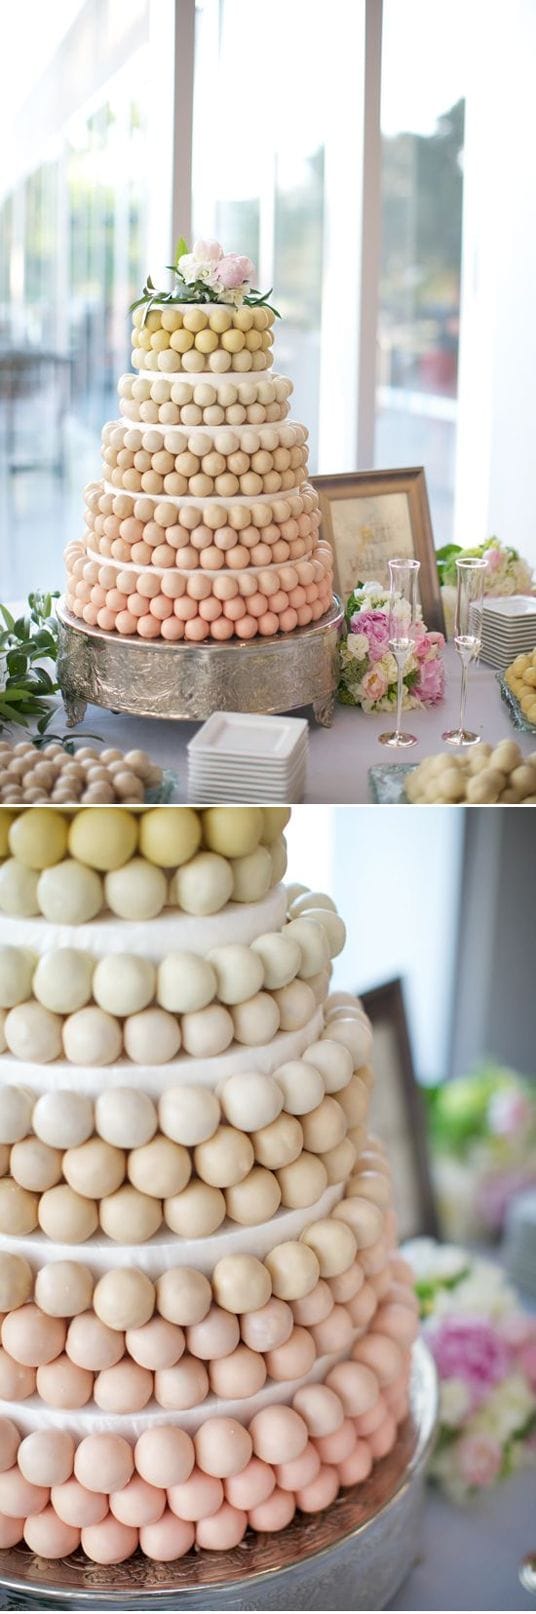 10 alternativas si no quieres tener pastel en tu boda 5